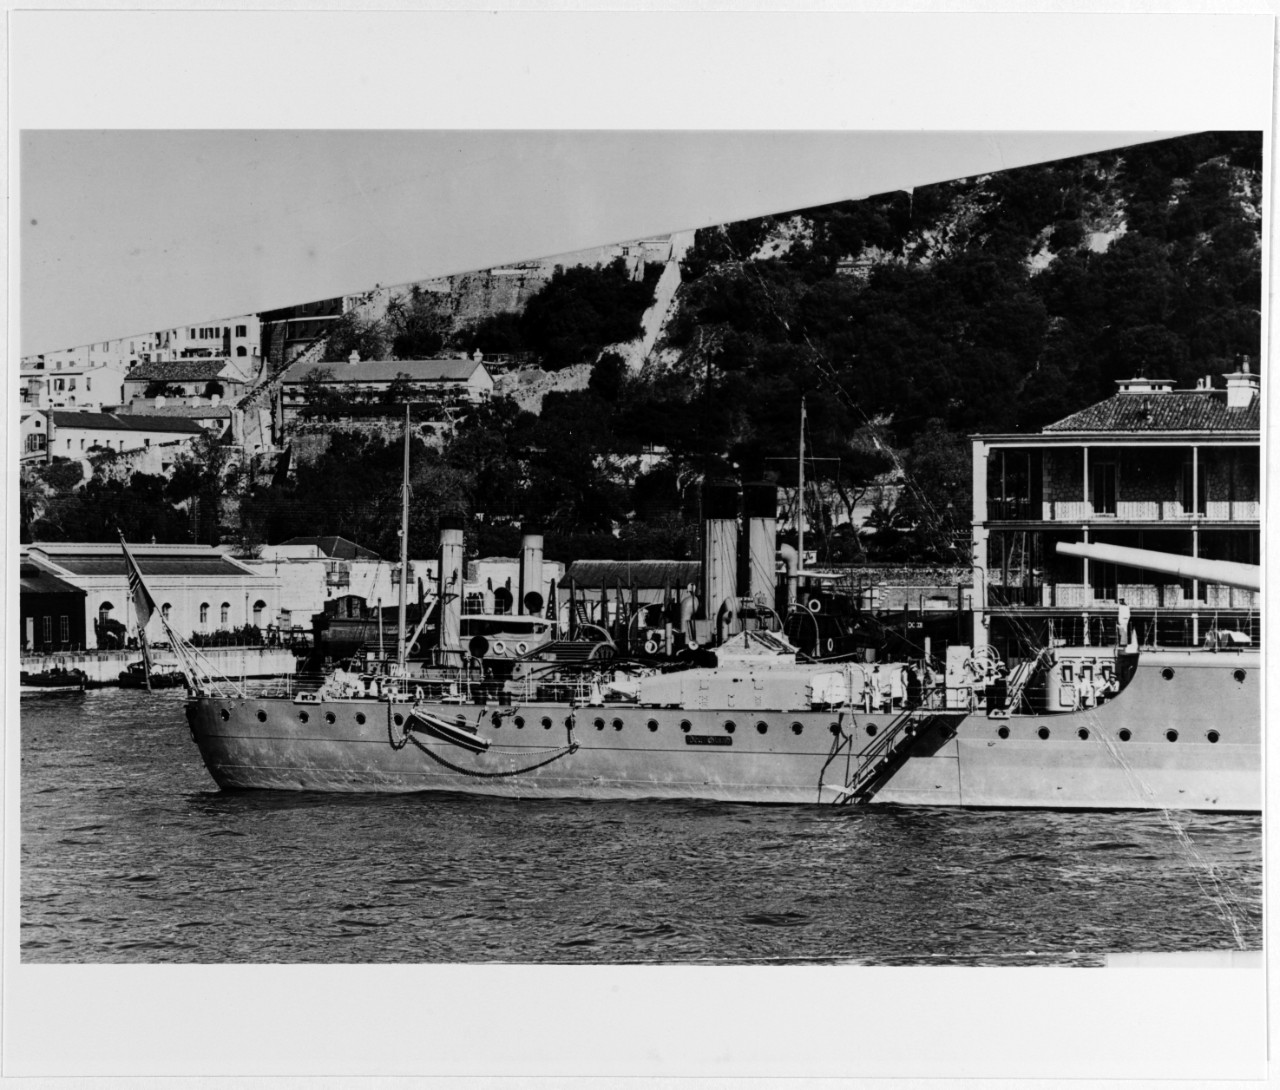 DEUTSCHLAND (German Battleship, 1931)